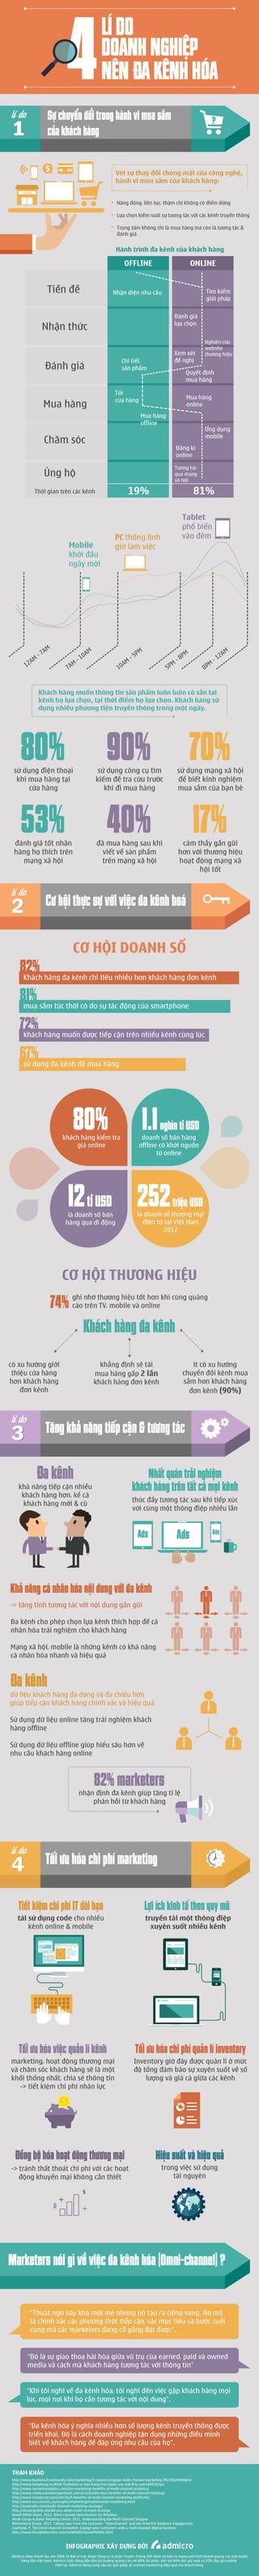 Infographic truyen thong da kenh